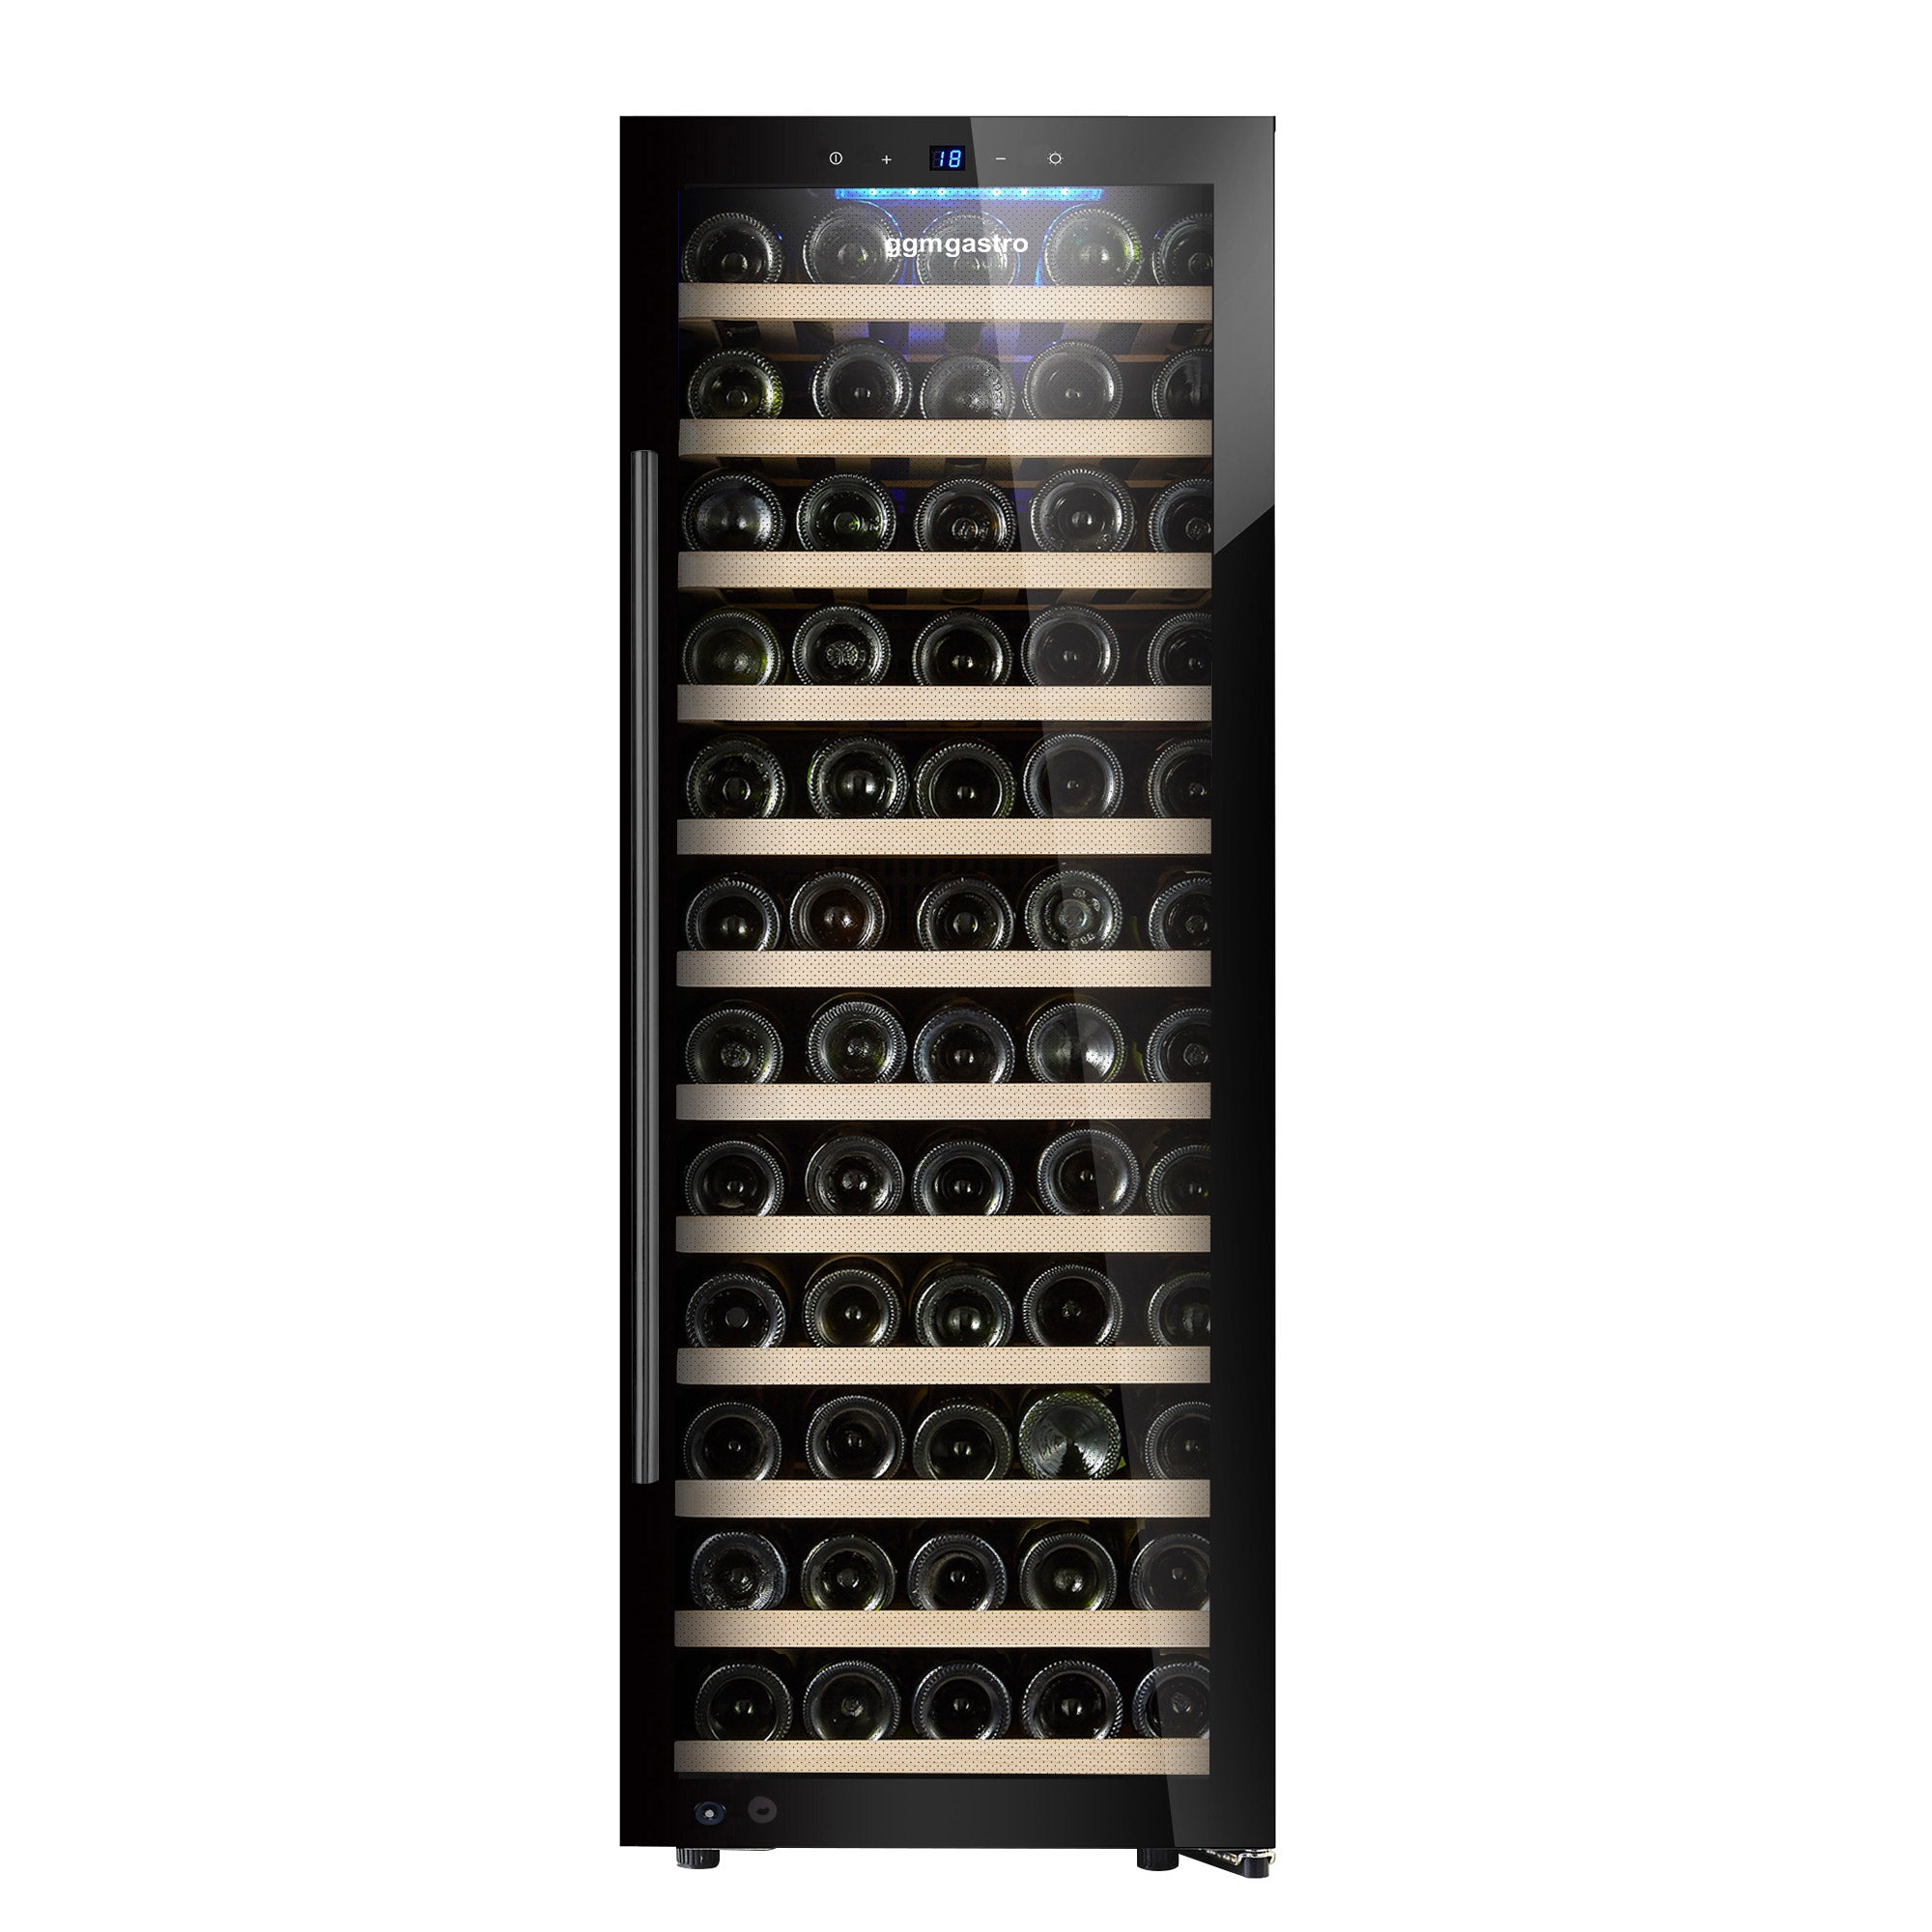 Vinkjøleskap - 200 liter - svart / med 1 klimasone